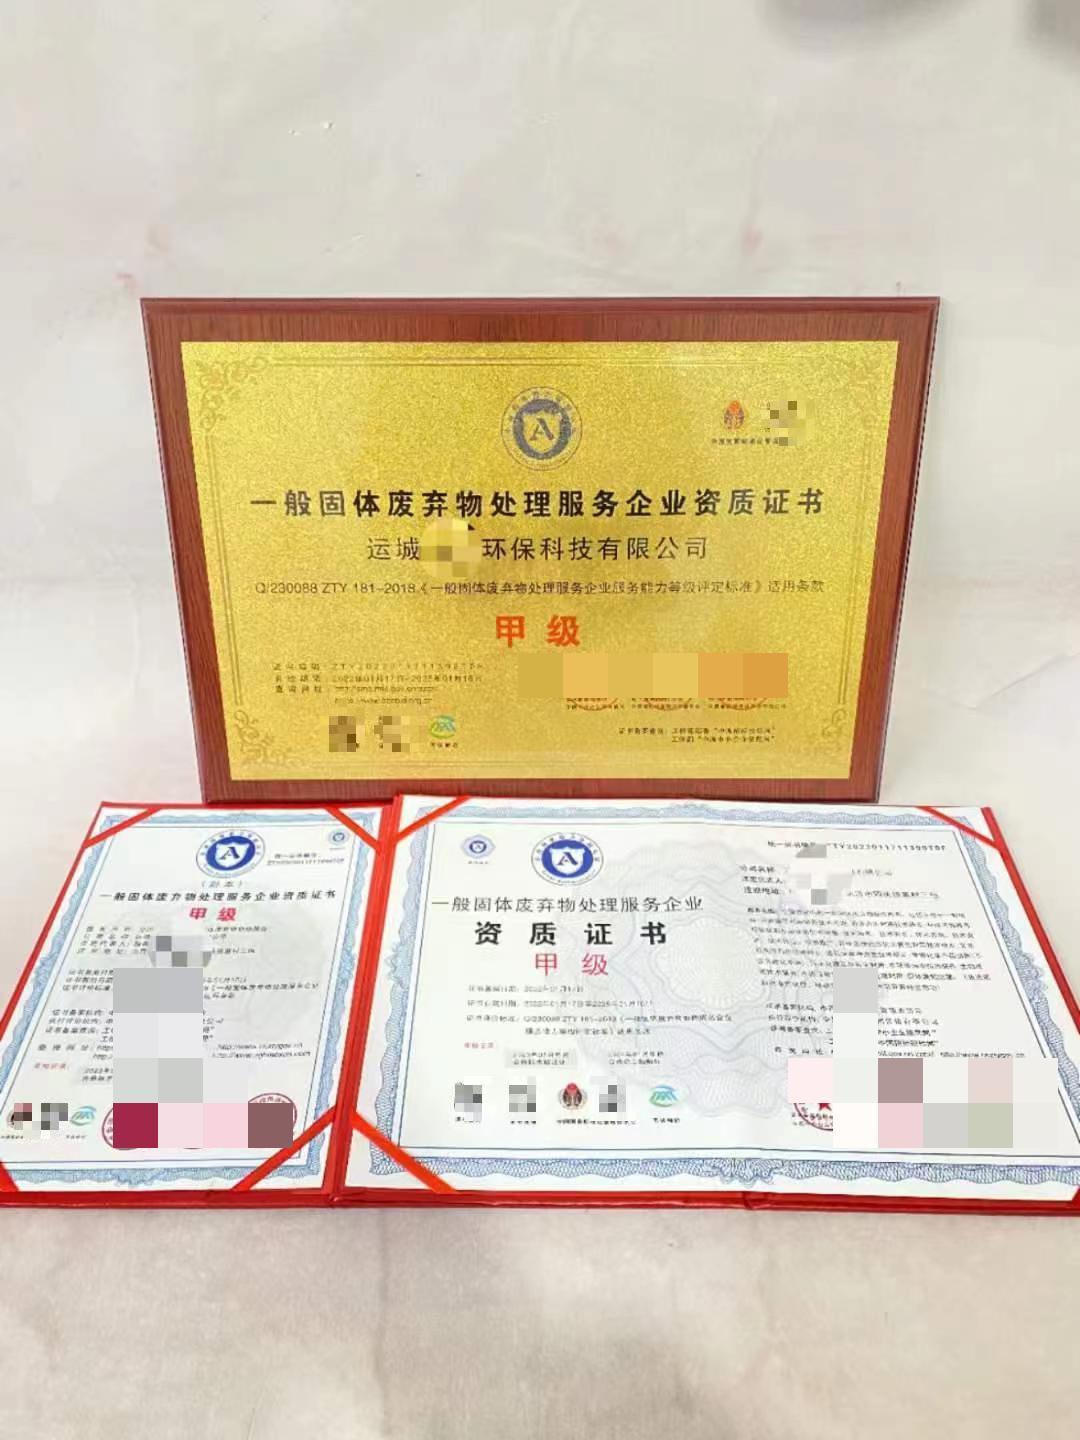 企业荣誉证书价格 北京企业荣誉证书 -如何申报,怎么申请